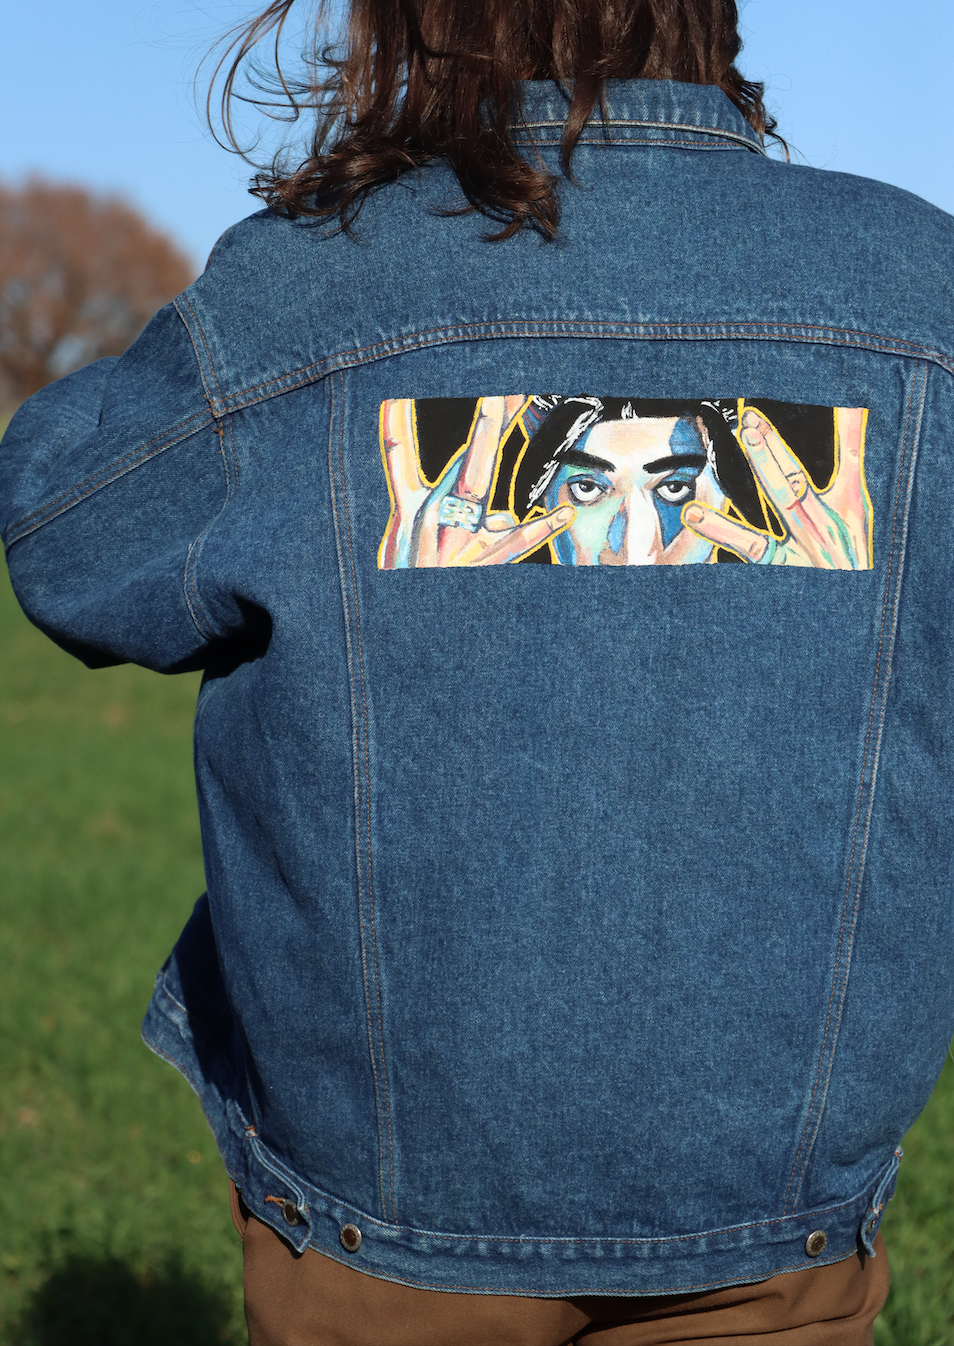 Custom Tupac Shakur / Tupac Shakur Jacket Handmade Painting